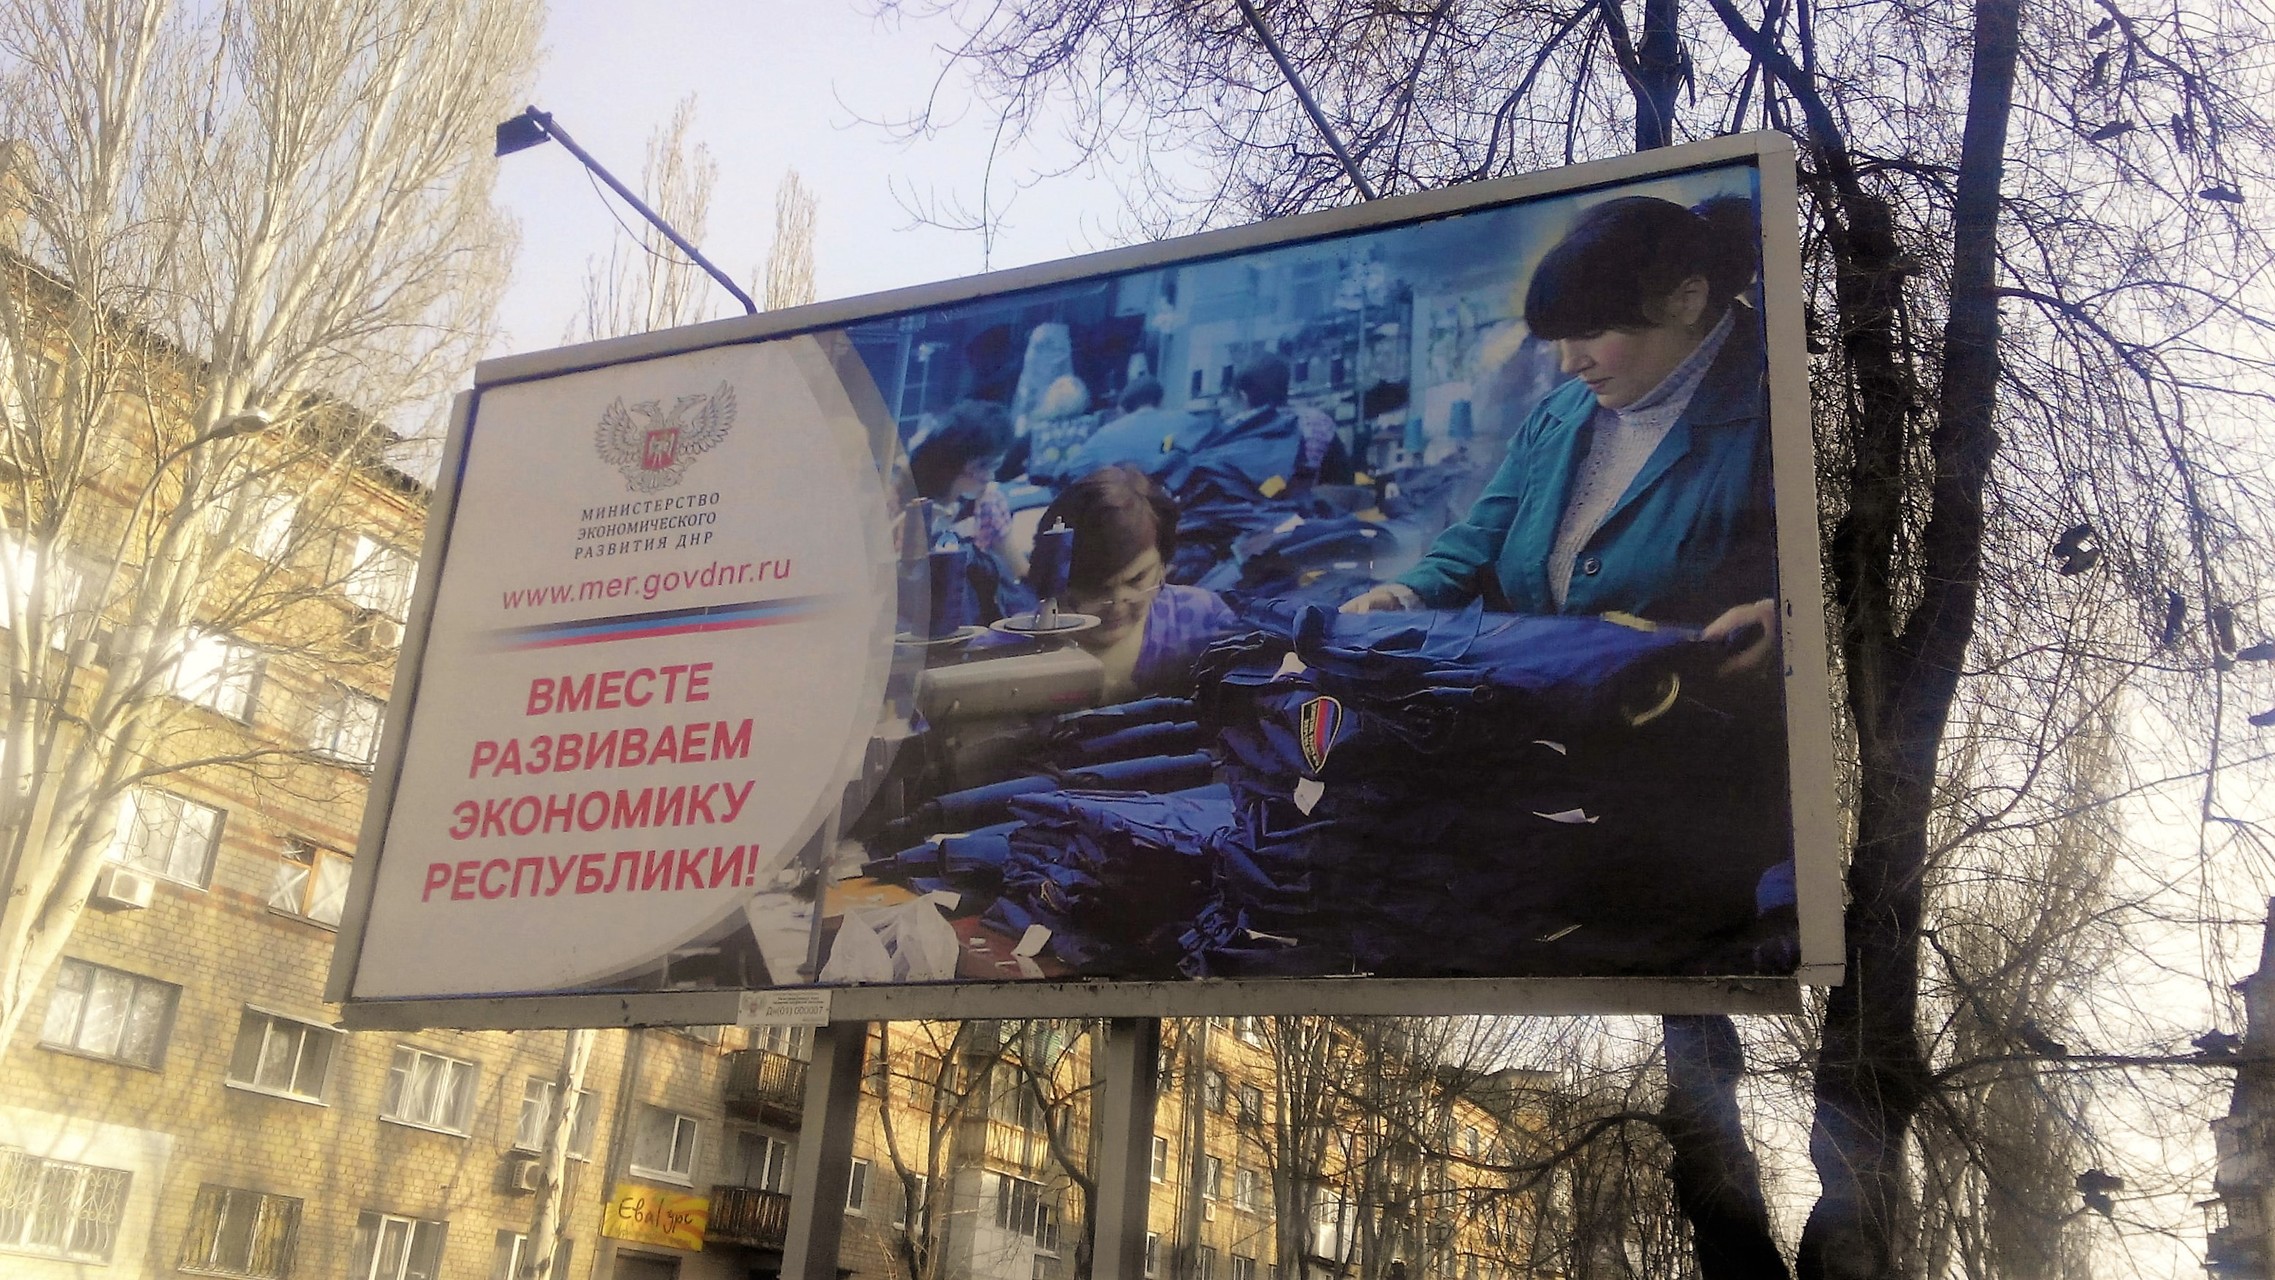 Як у Донецьку окупанти імітують довоєнне життя  (ФОТО) - фото 1